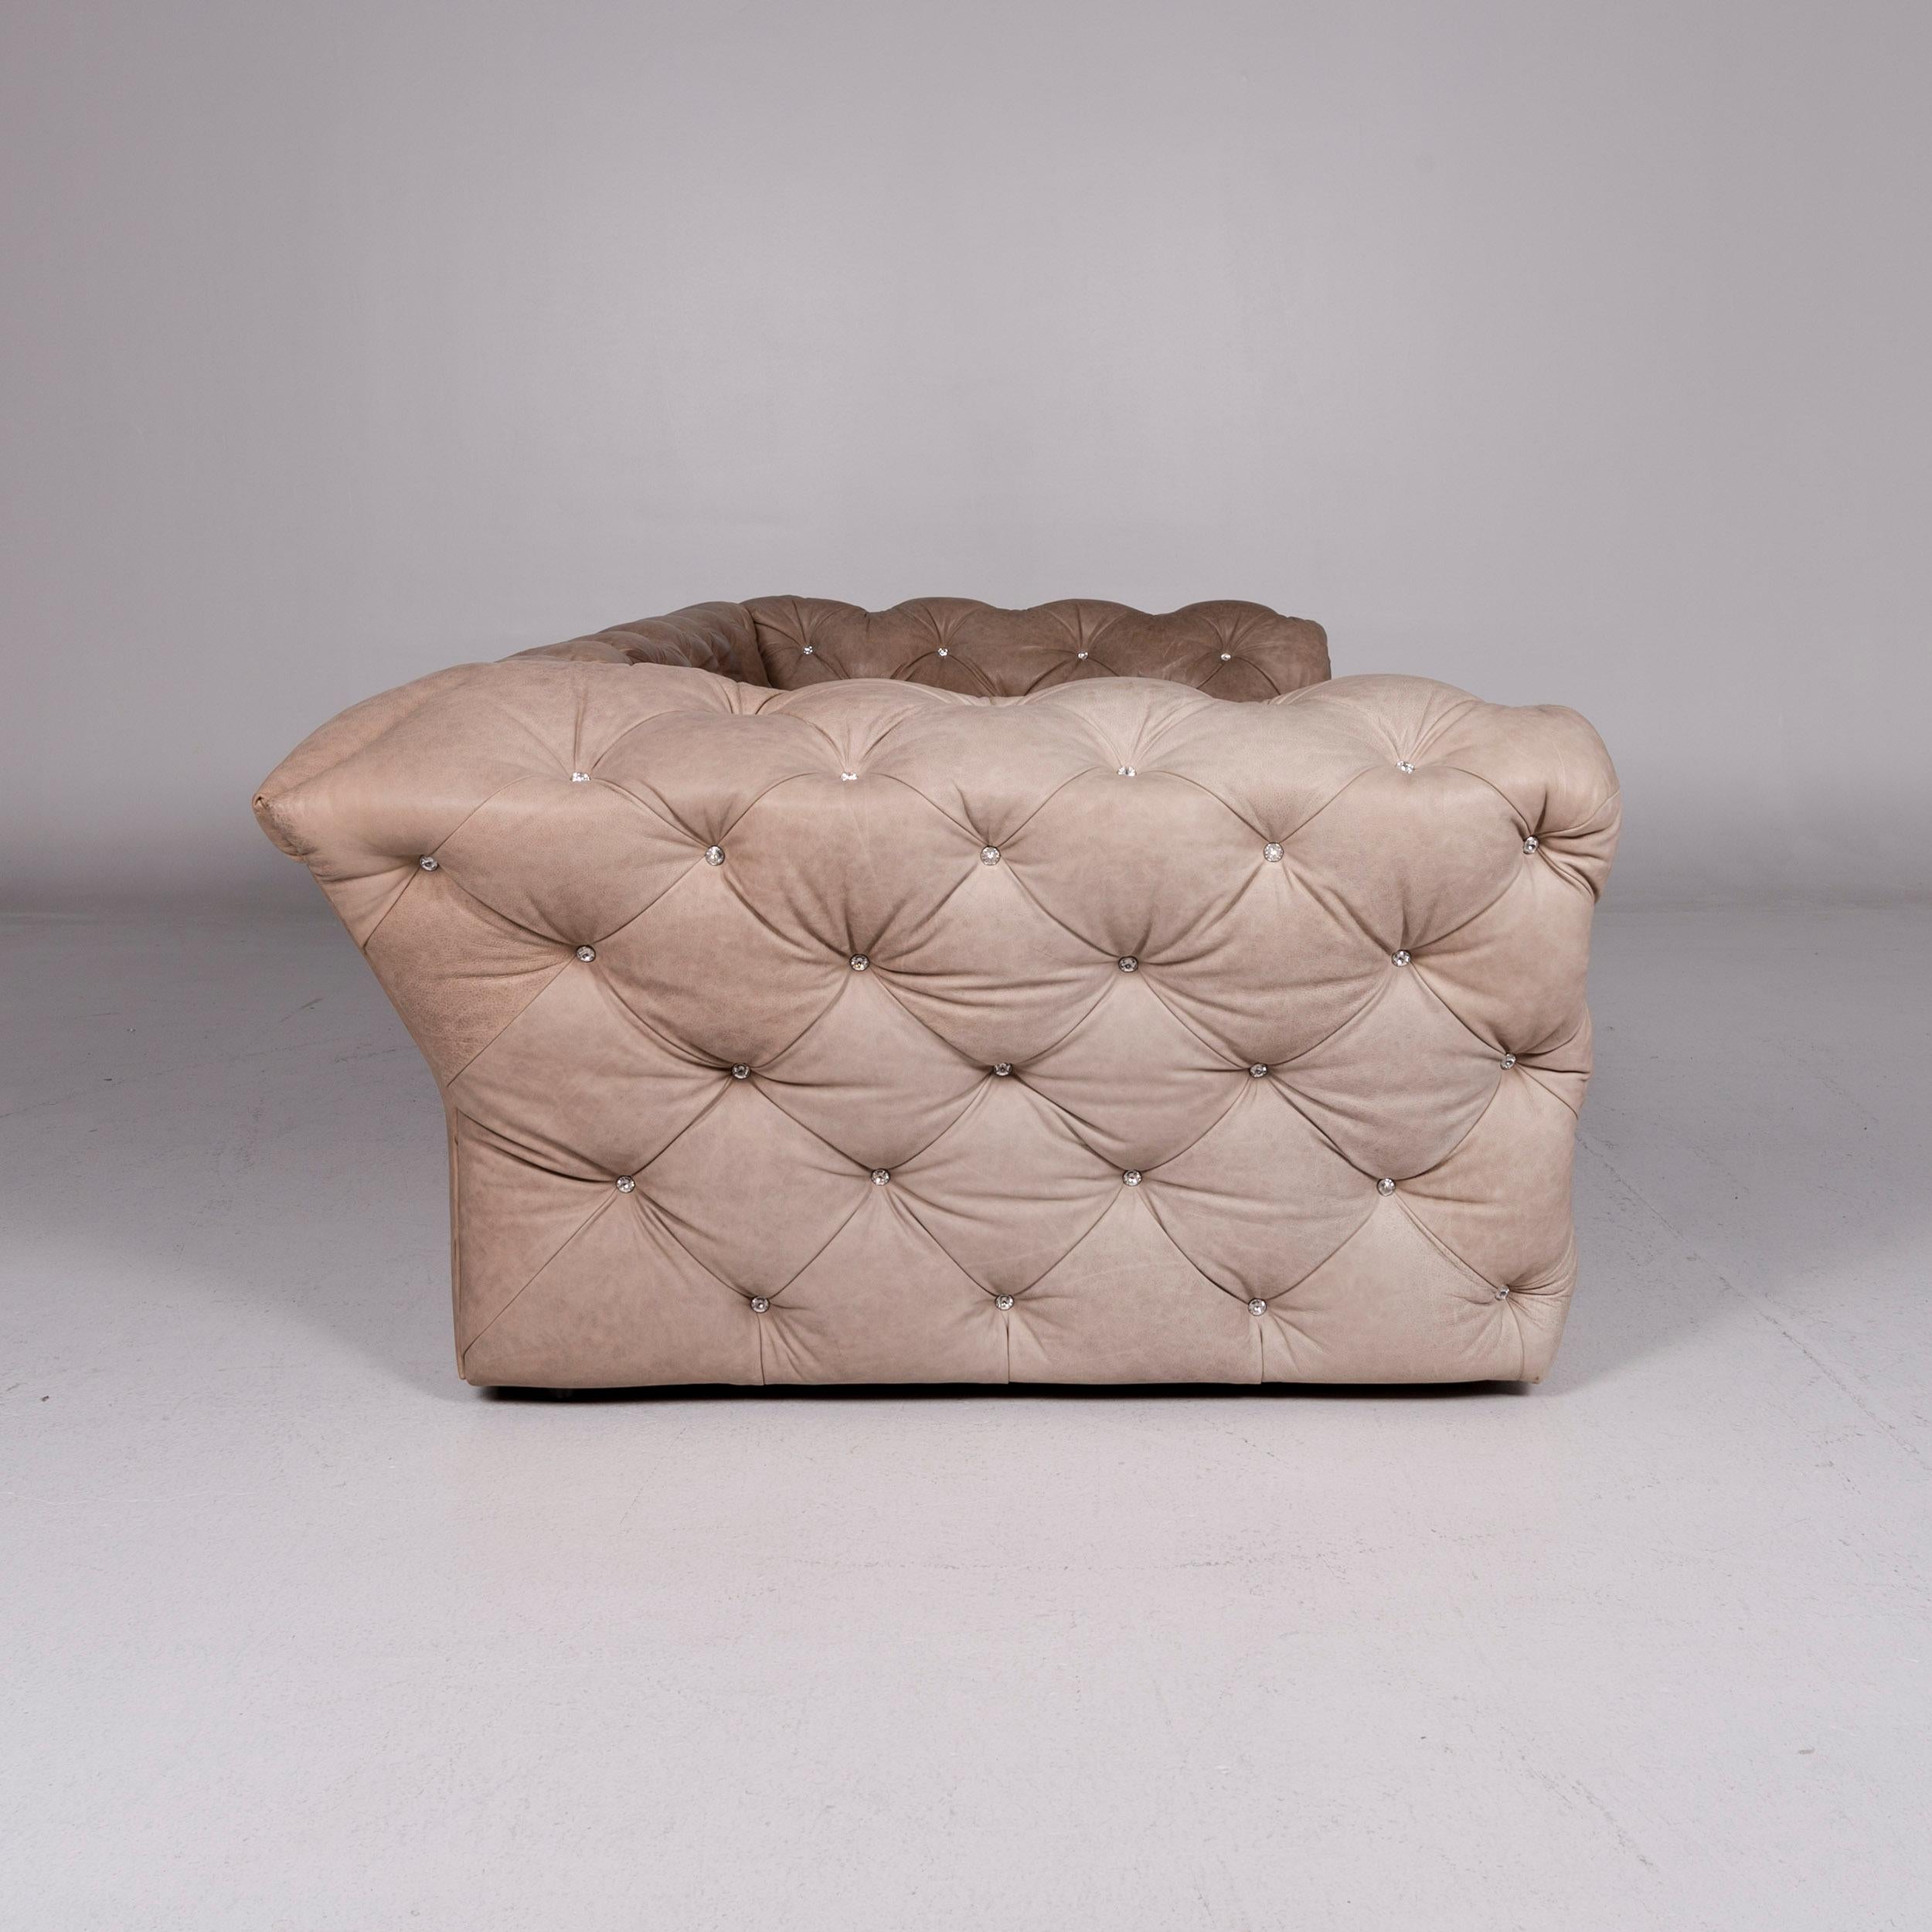 Bretz Marilyn Leather Sofa Brown Three-Seat Kaptionierung Glitterstones For Sale 3